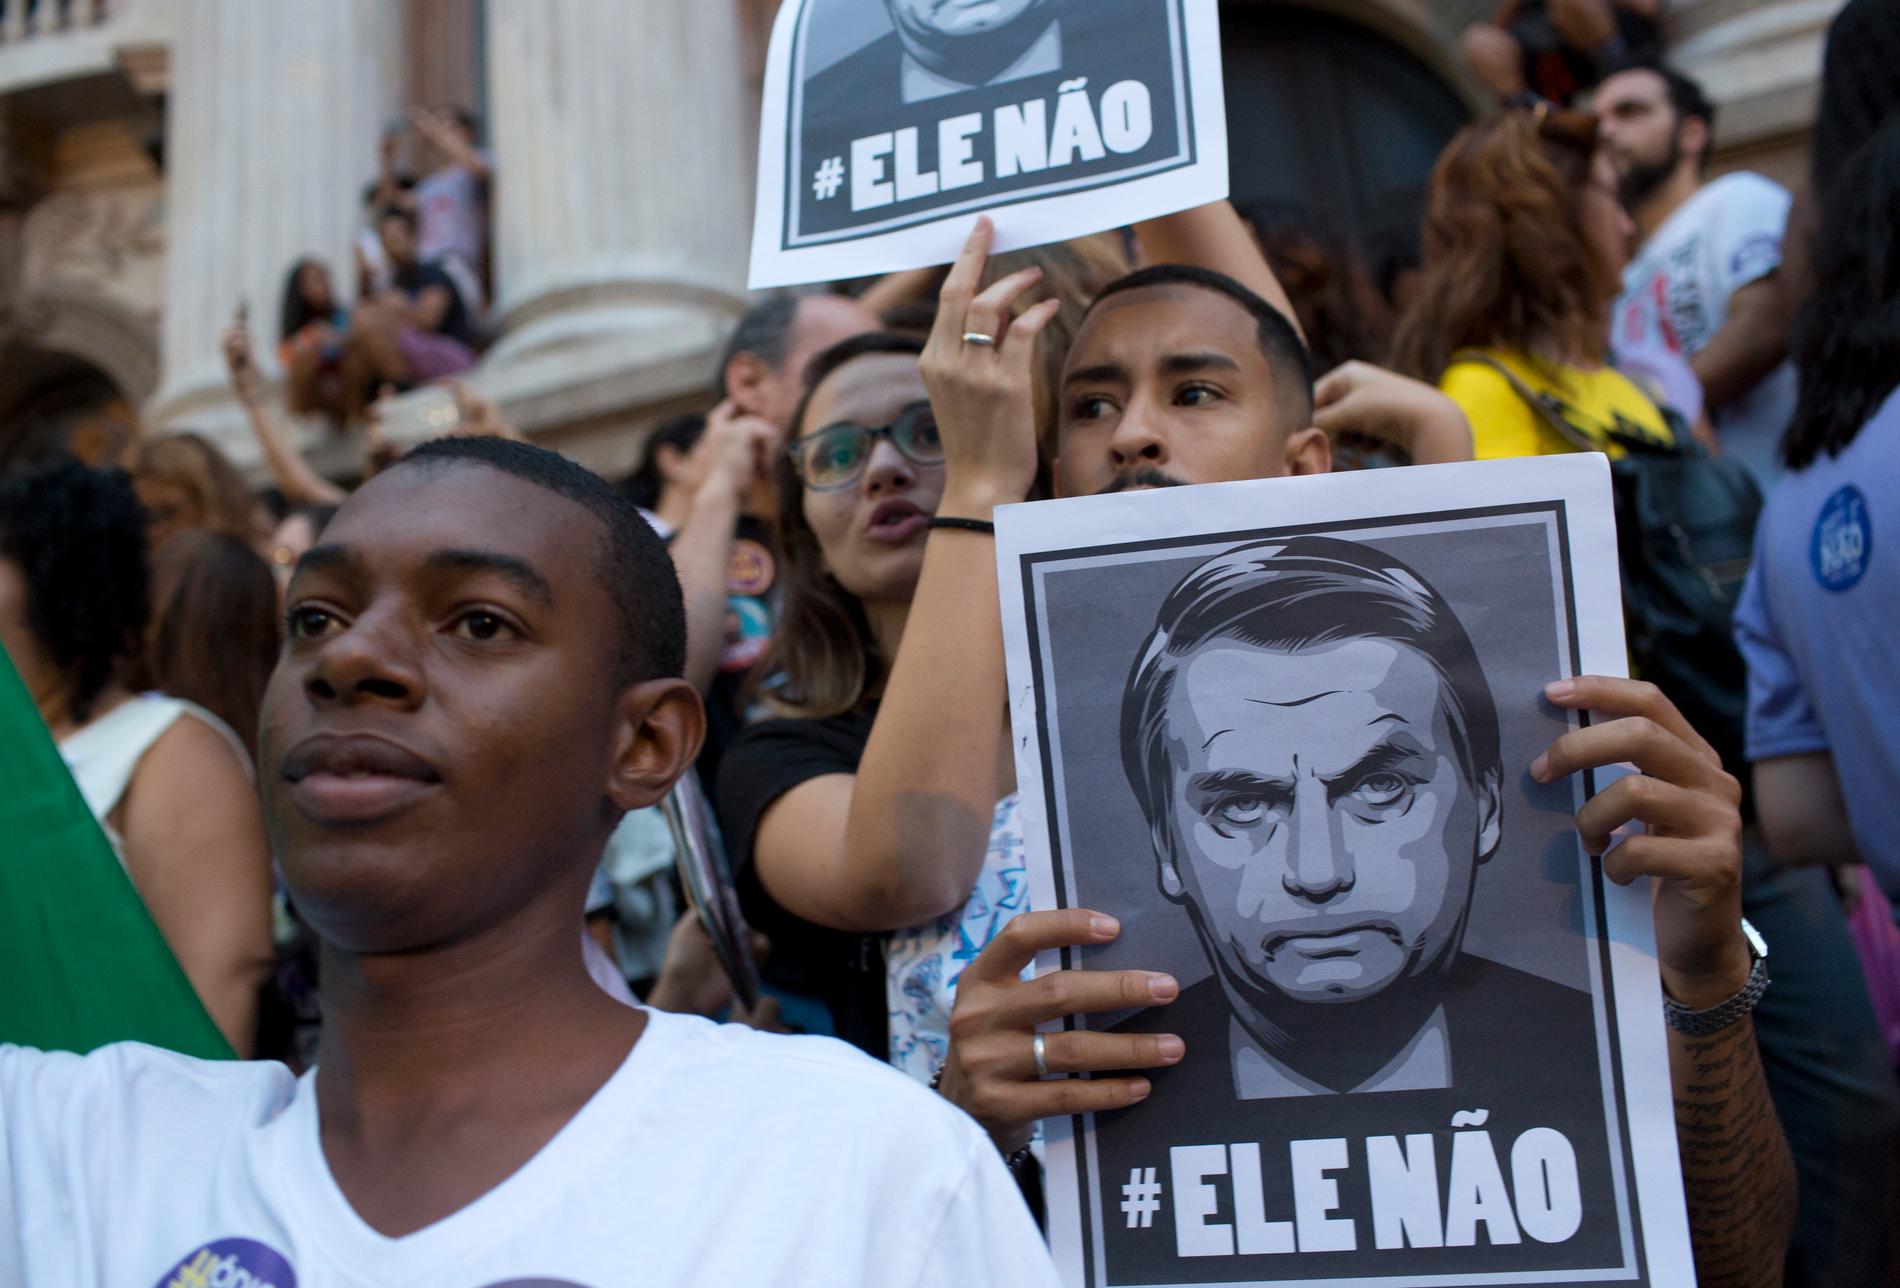 "Inte han", står det på plakaten när människor i Rio de Janeiro nyligen protesterade mot den högerextreme presidentkandidaten Jair Bolsonaro, som leder i opinionsmätningarna inför söndagens val.